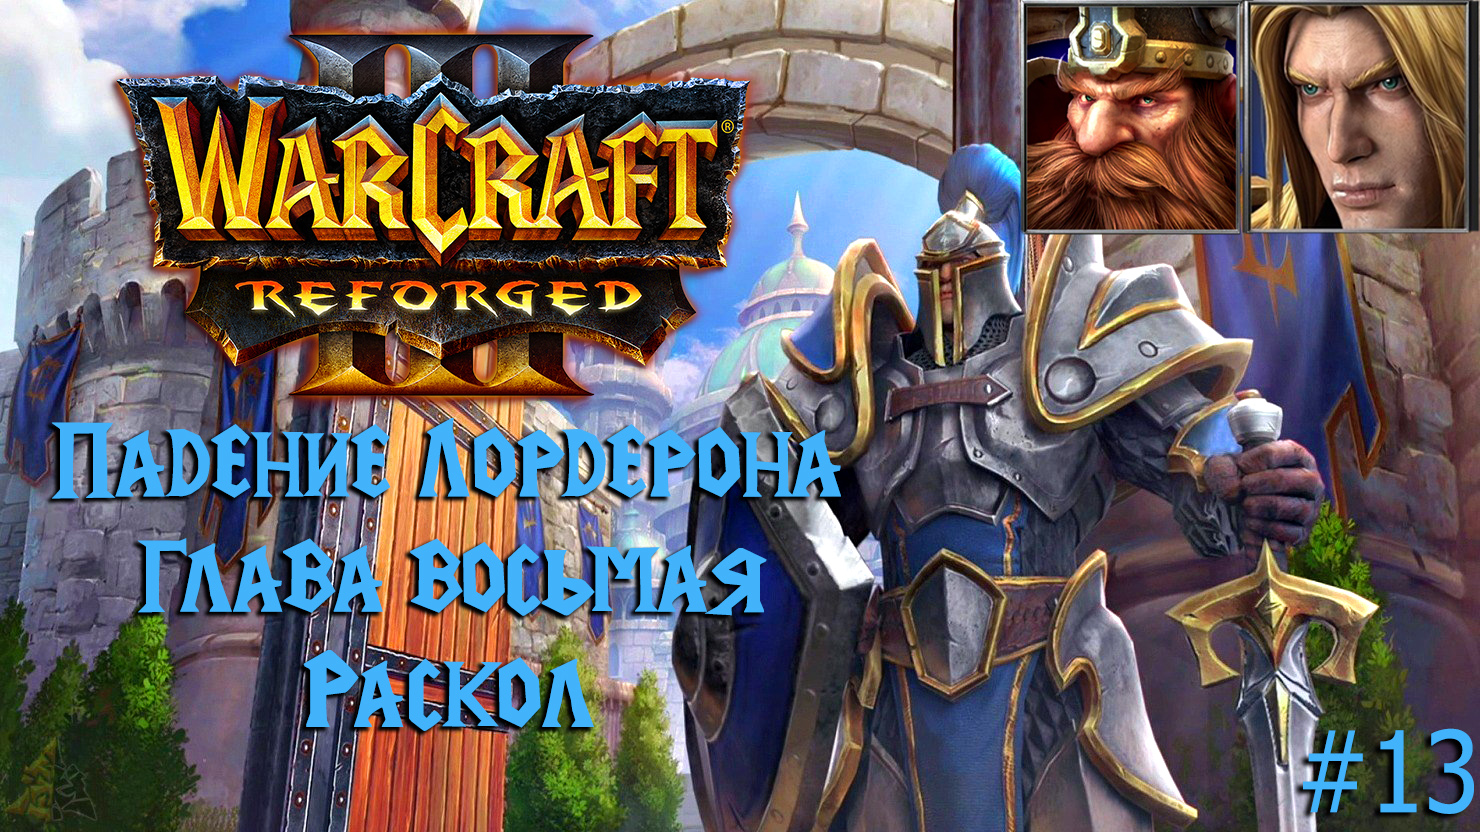 Warcraft III: Reforged | Падение Лордерона | Глава восьмая | Раскол | #13